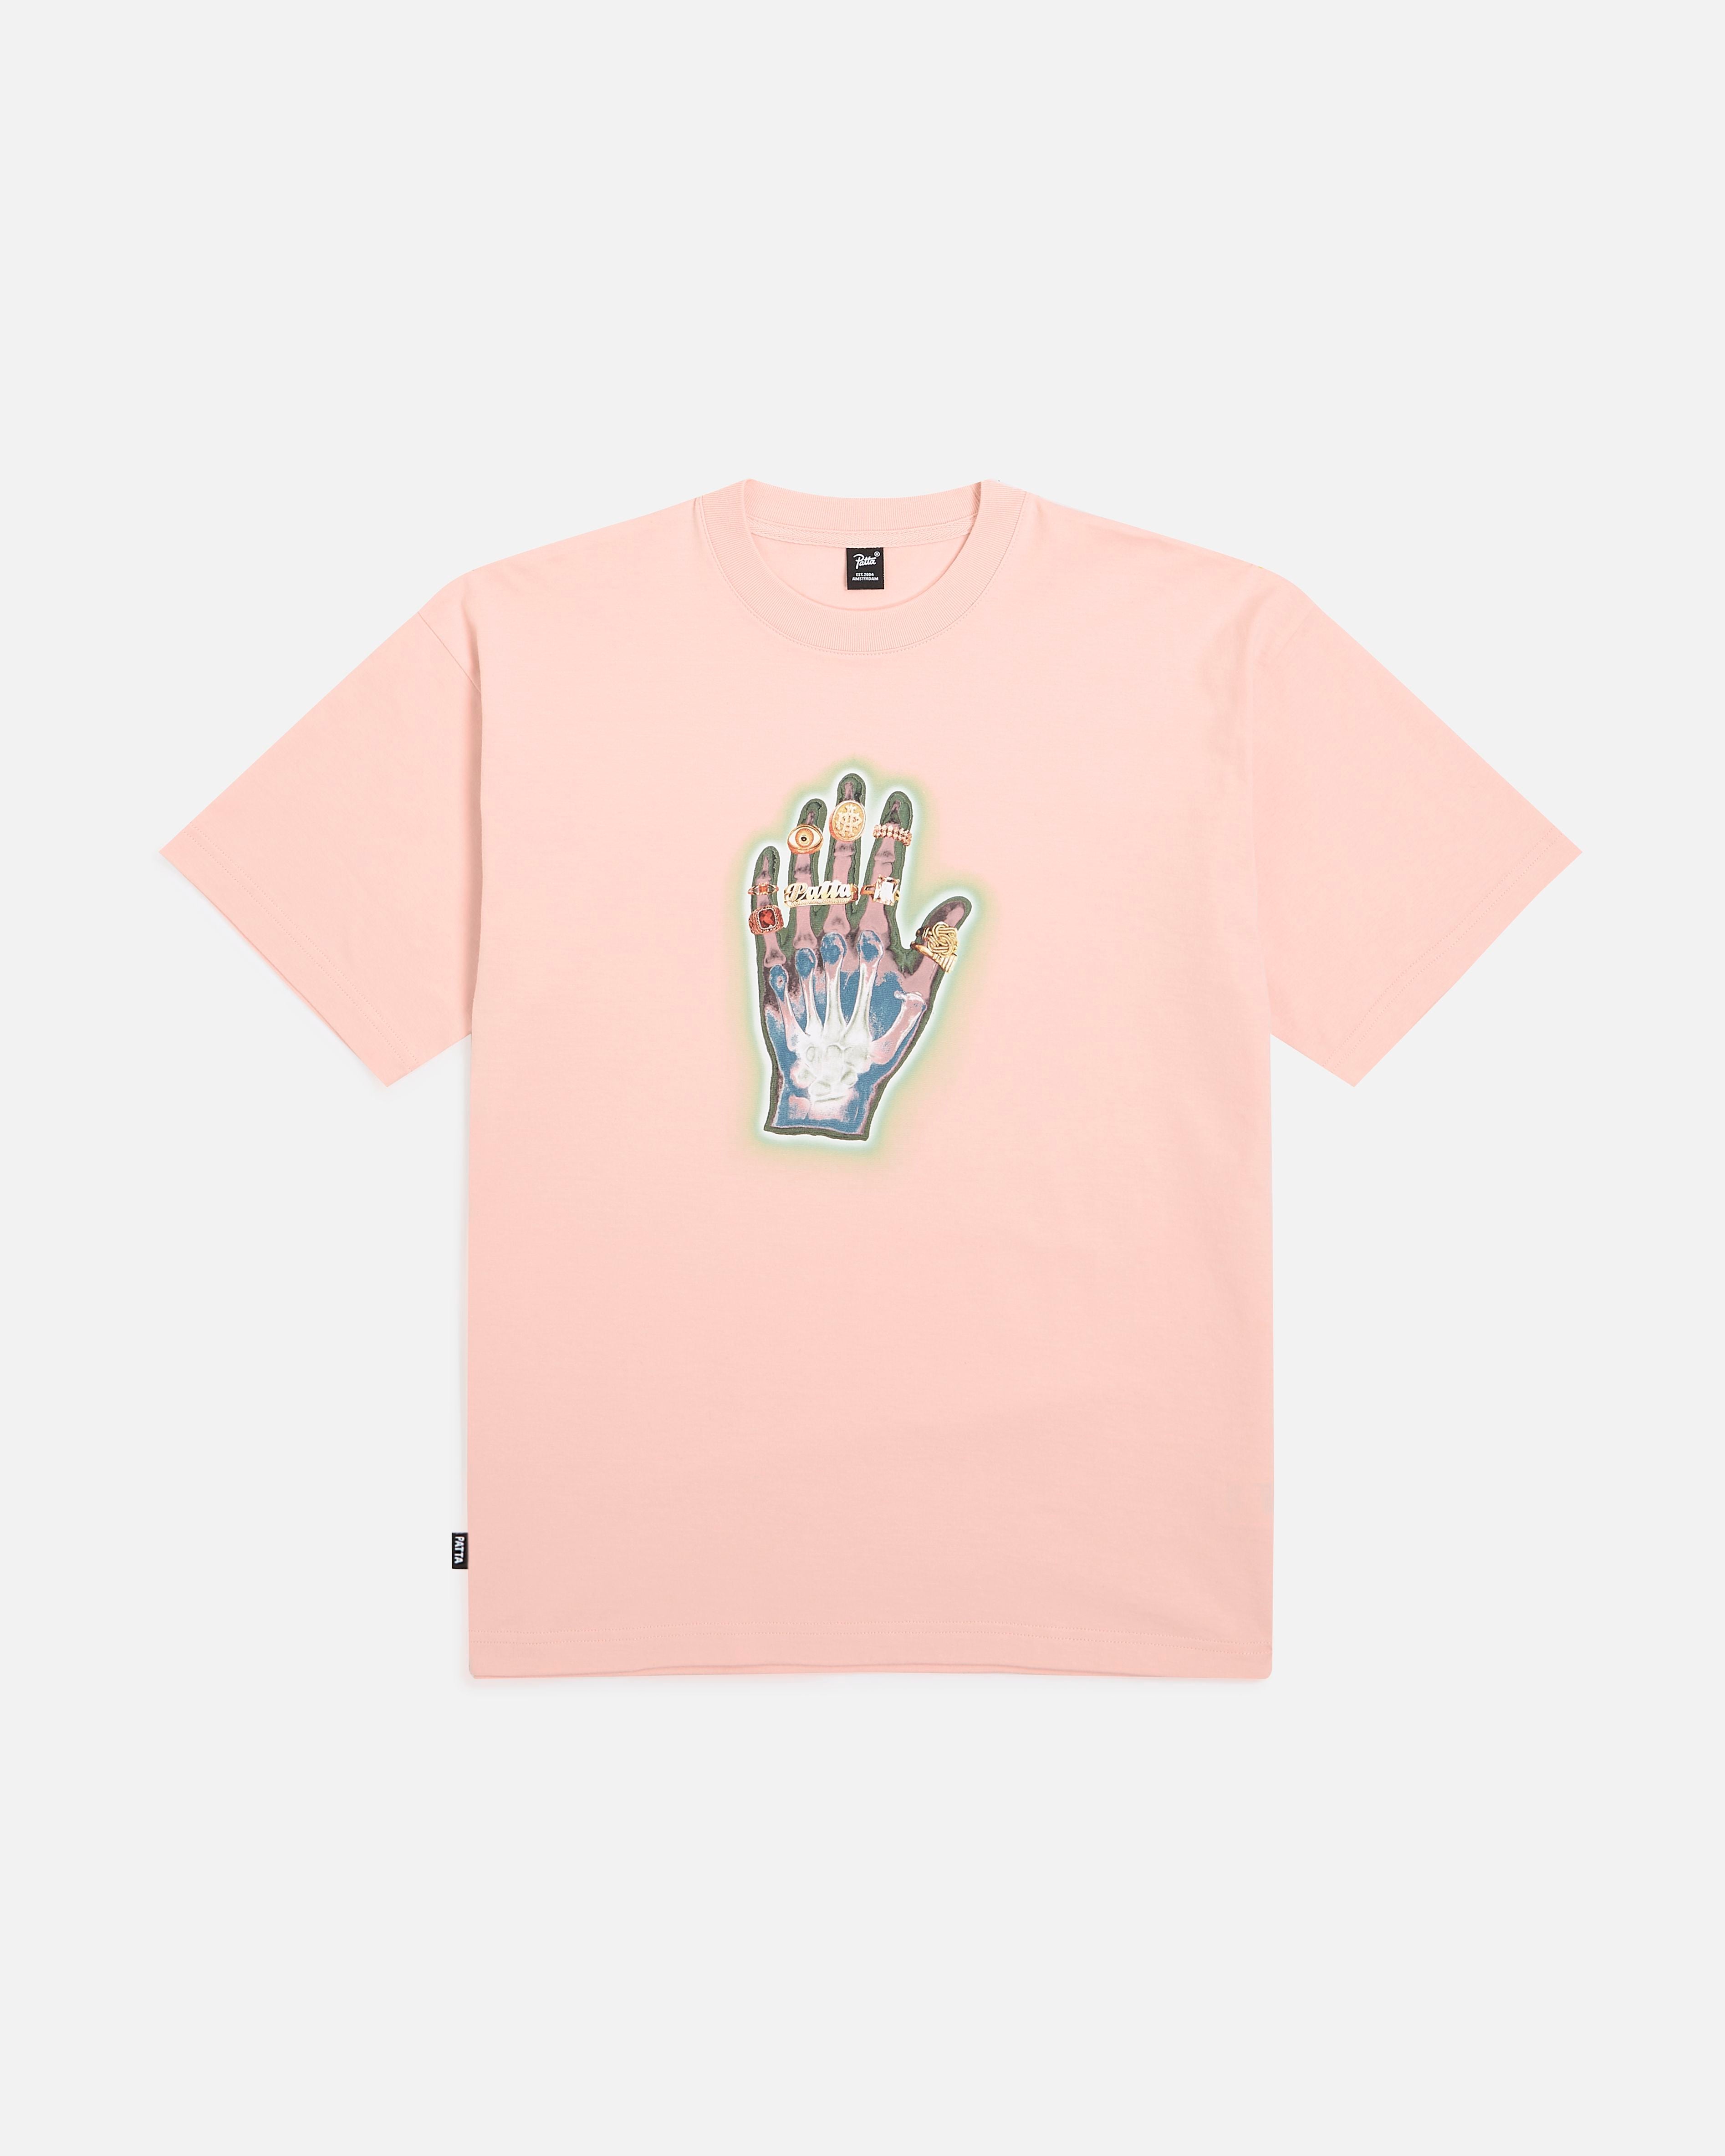 Patta Healing Hands T-Shirt image